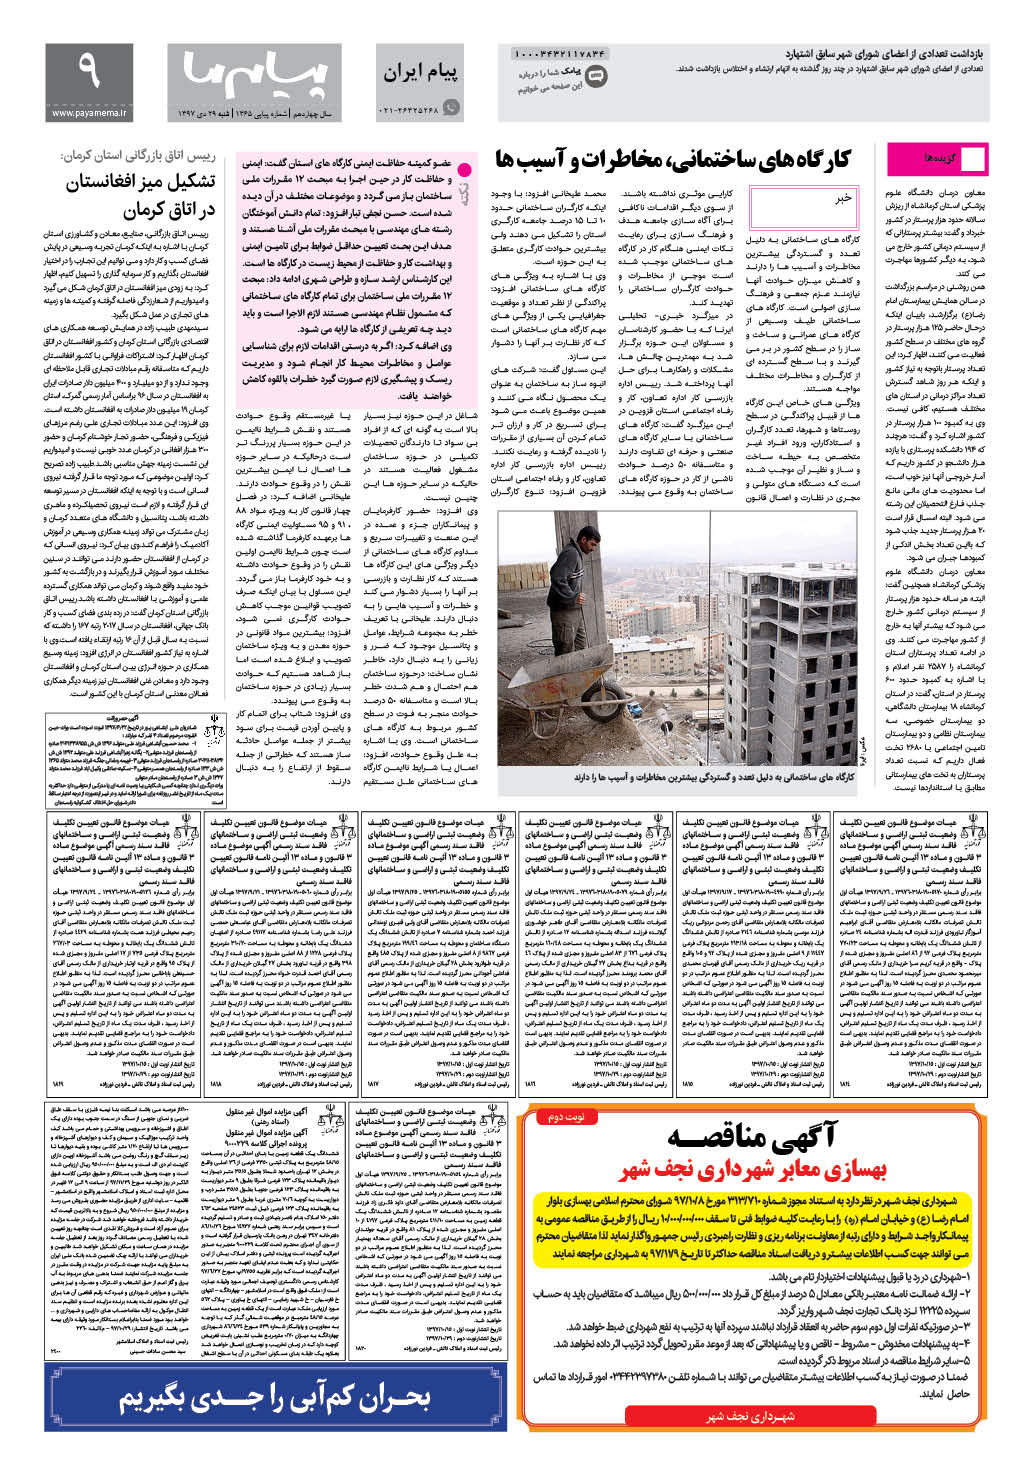 صفحه پیام ایران شماره 1365 روزنامه پیام ما